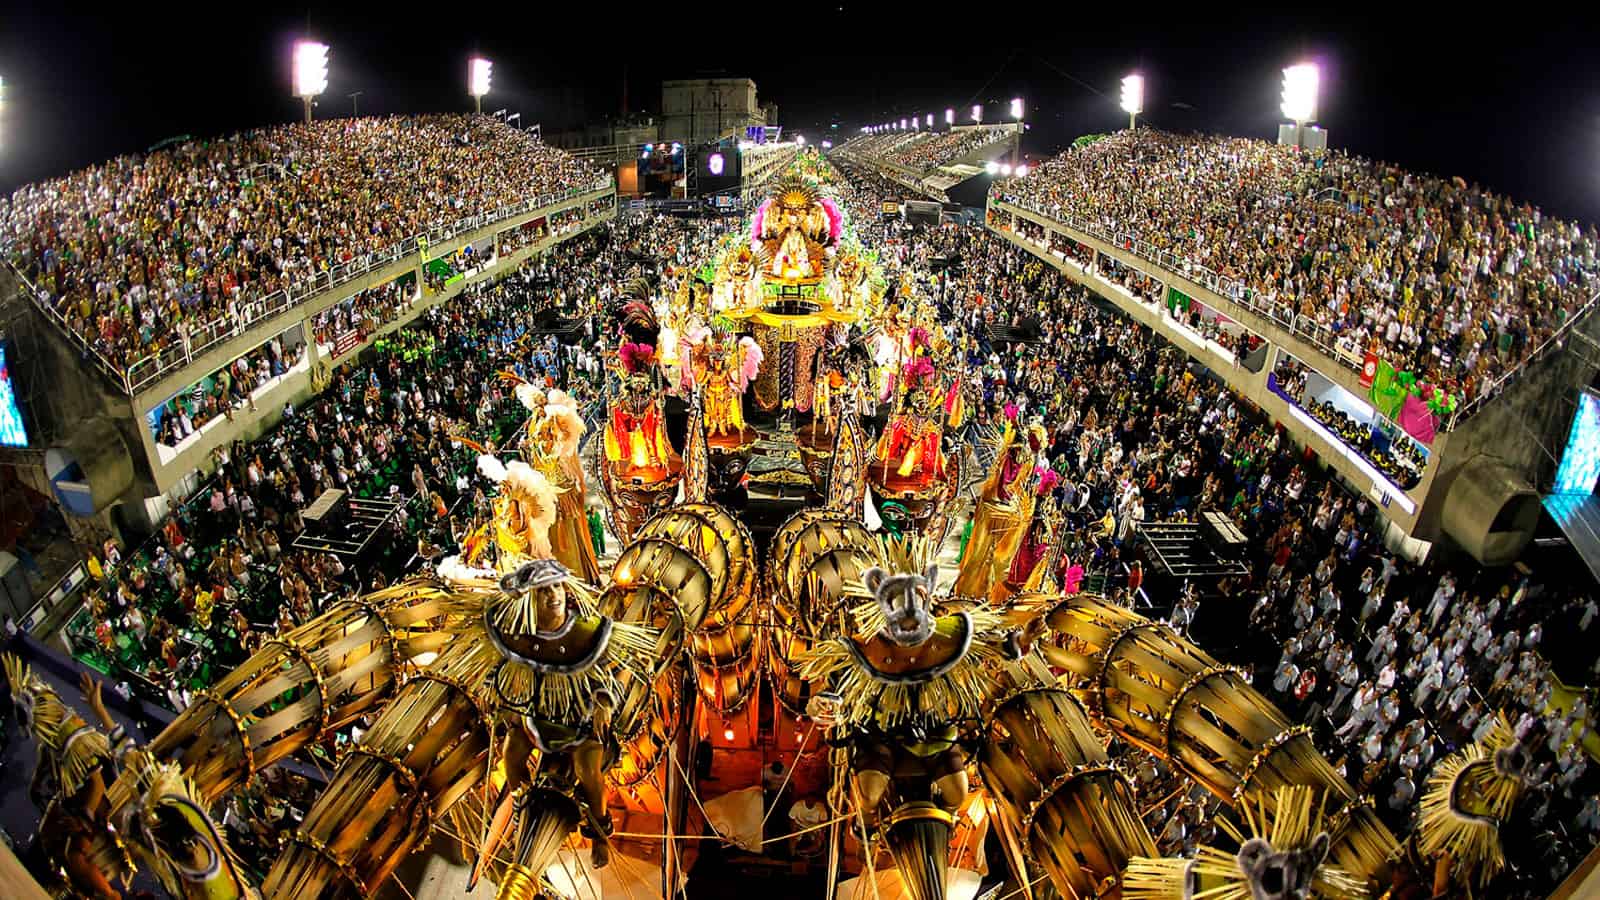 Carnaval en Río de Janeiro, la fiesta de carnaval más grande del mundo -  South American Jets